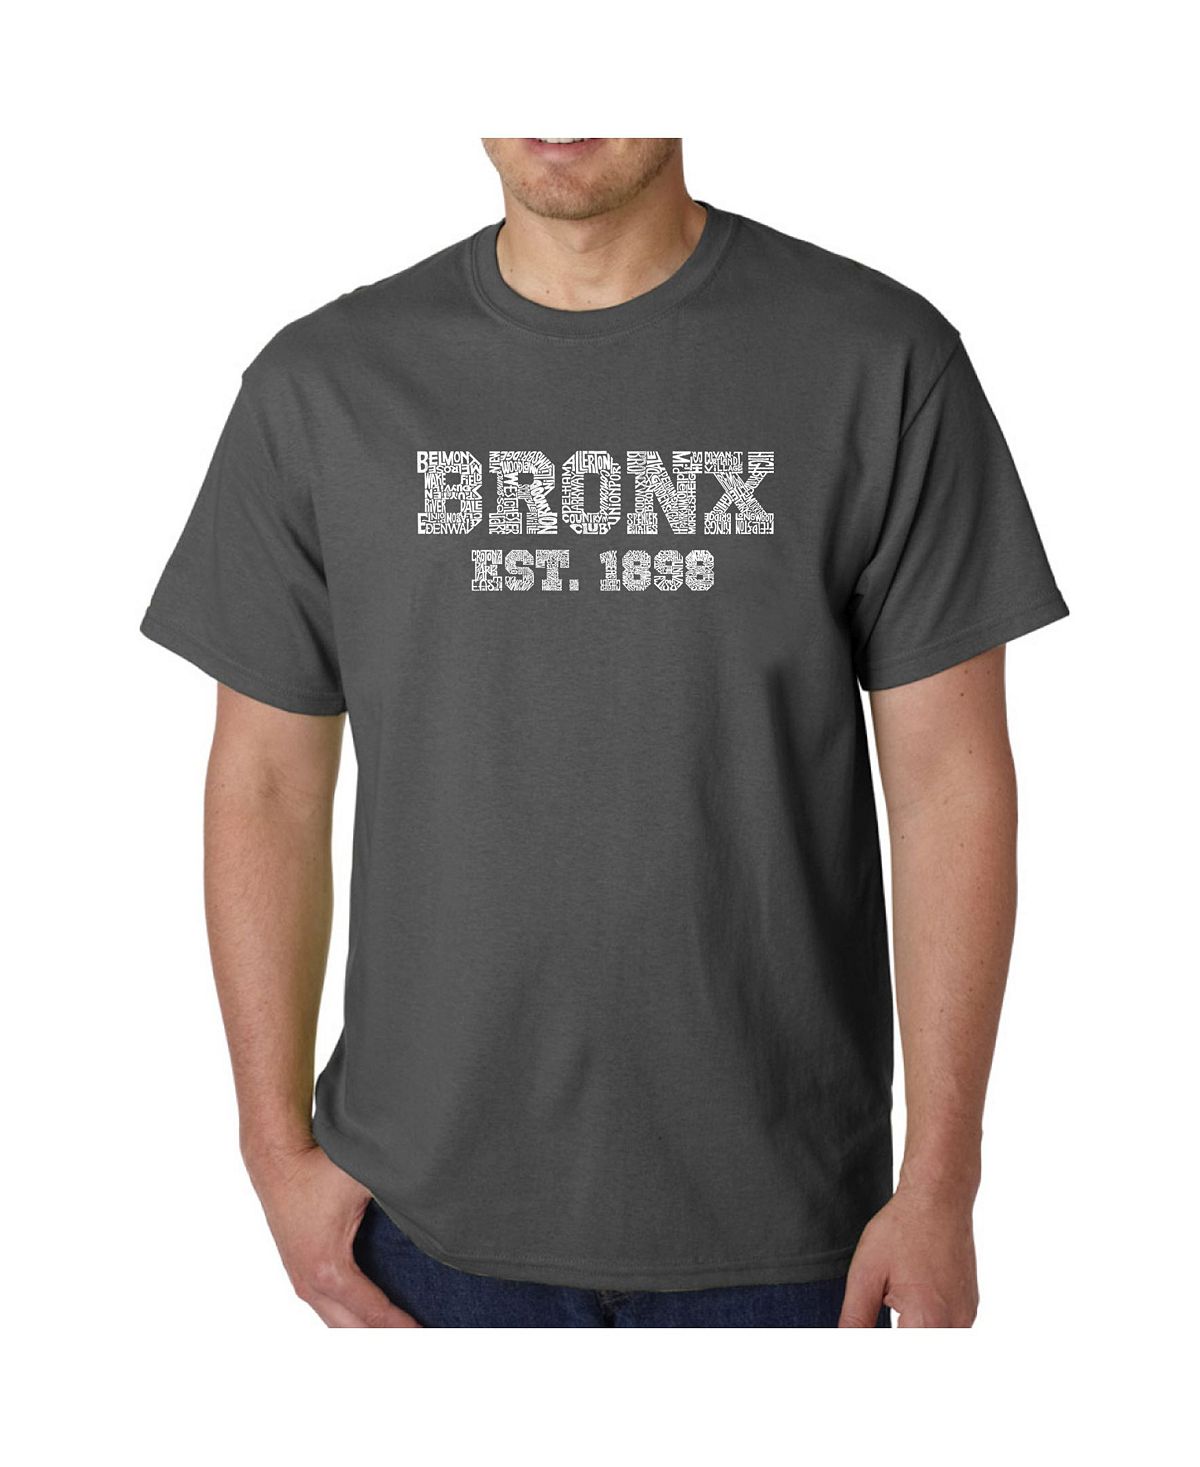 Мужская футболка word art - популярный бронкс, районы нью-йорка LA Pop Art, серый цена и фото